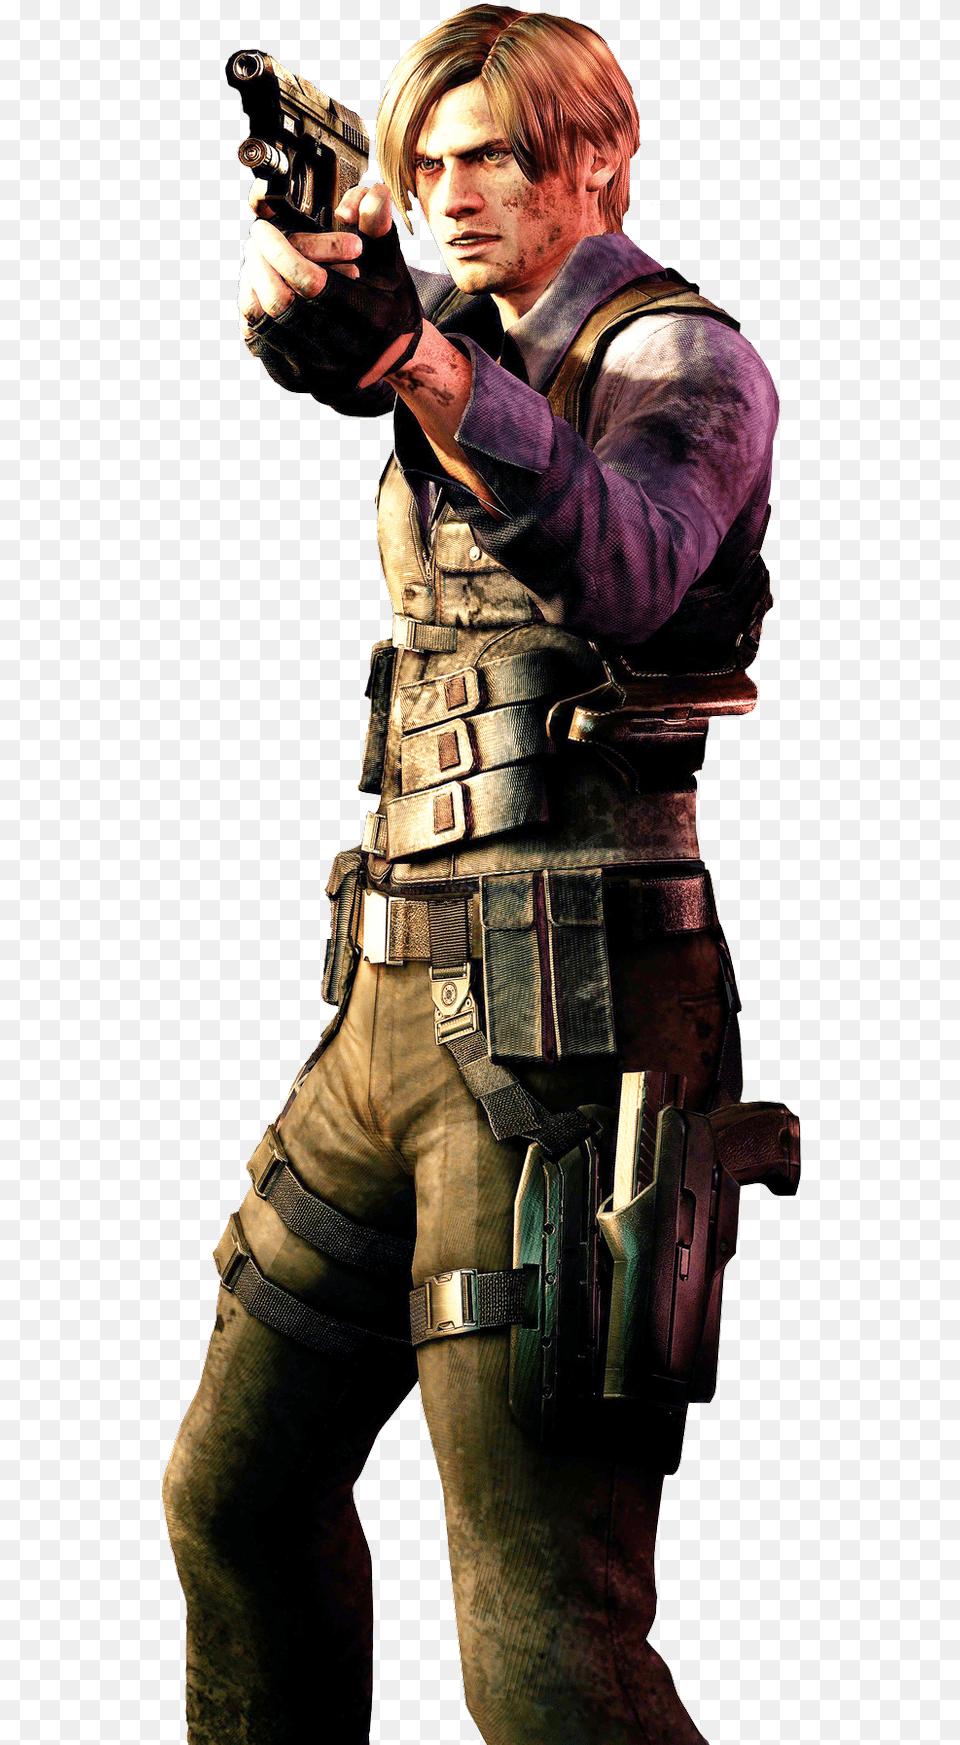 Resident Evil Leon Resident Evil 6, Weapon, Firearm, Gun, Handgun Free Png